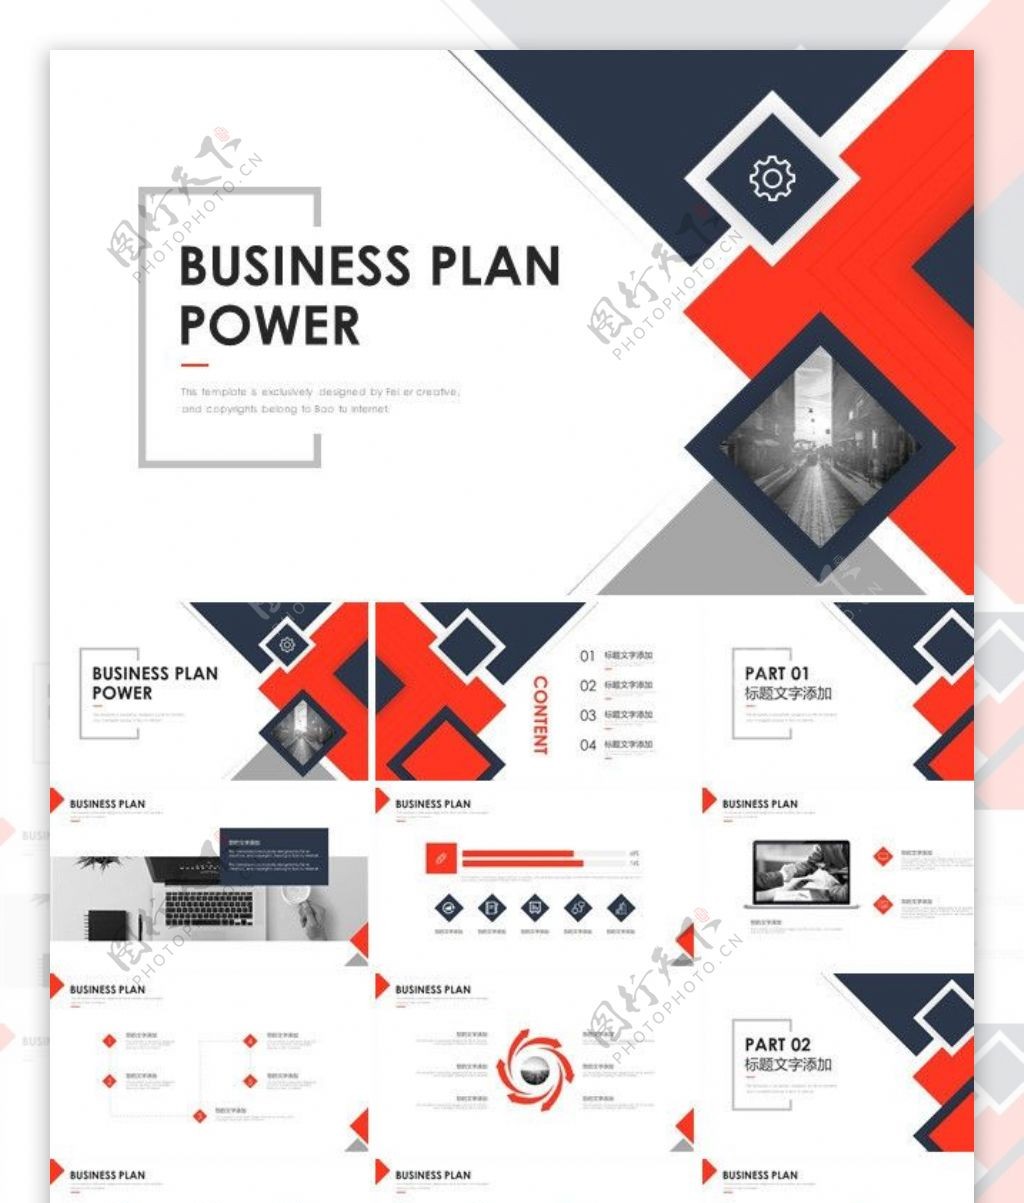 PPT模板总结计划商业素材封面